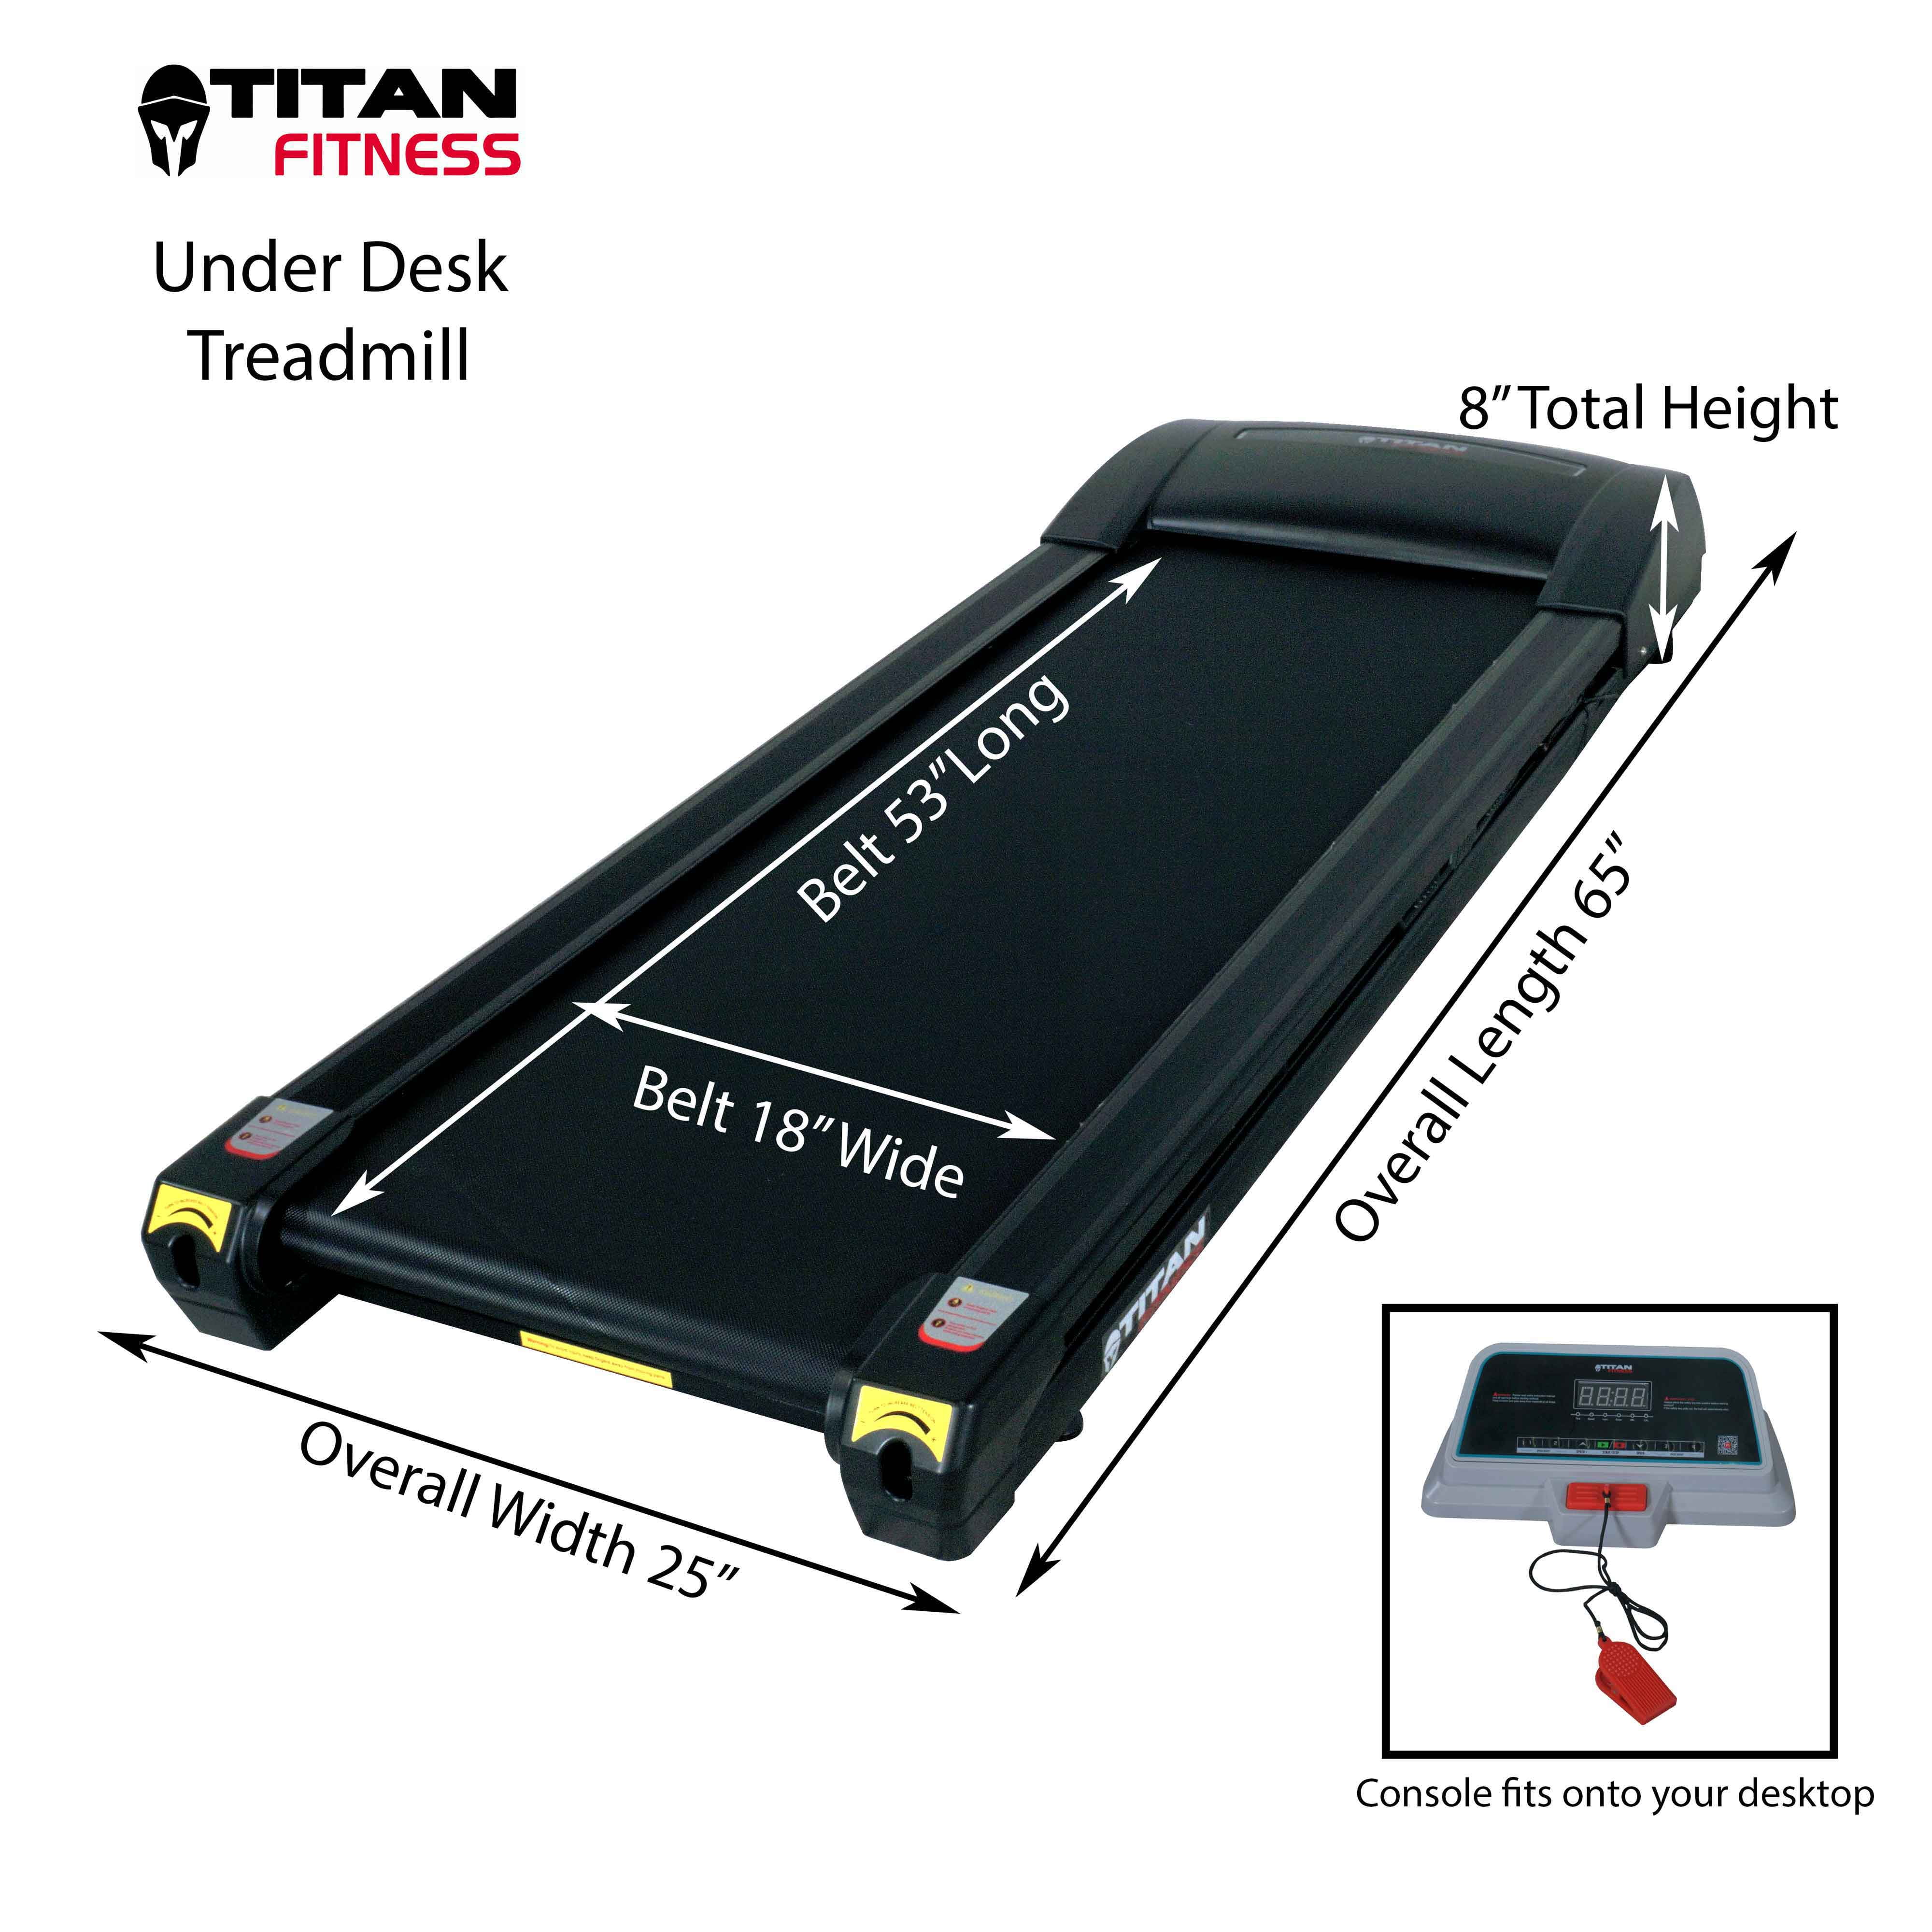 Titan Fitness Mini Treadmill For Under Desk Office Work Exercise